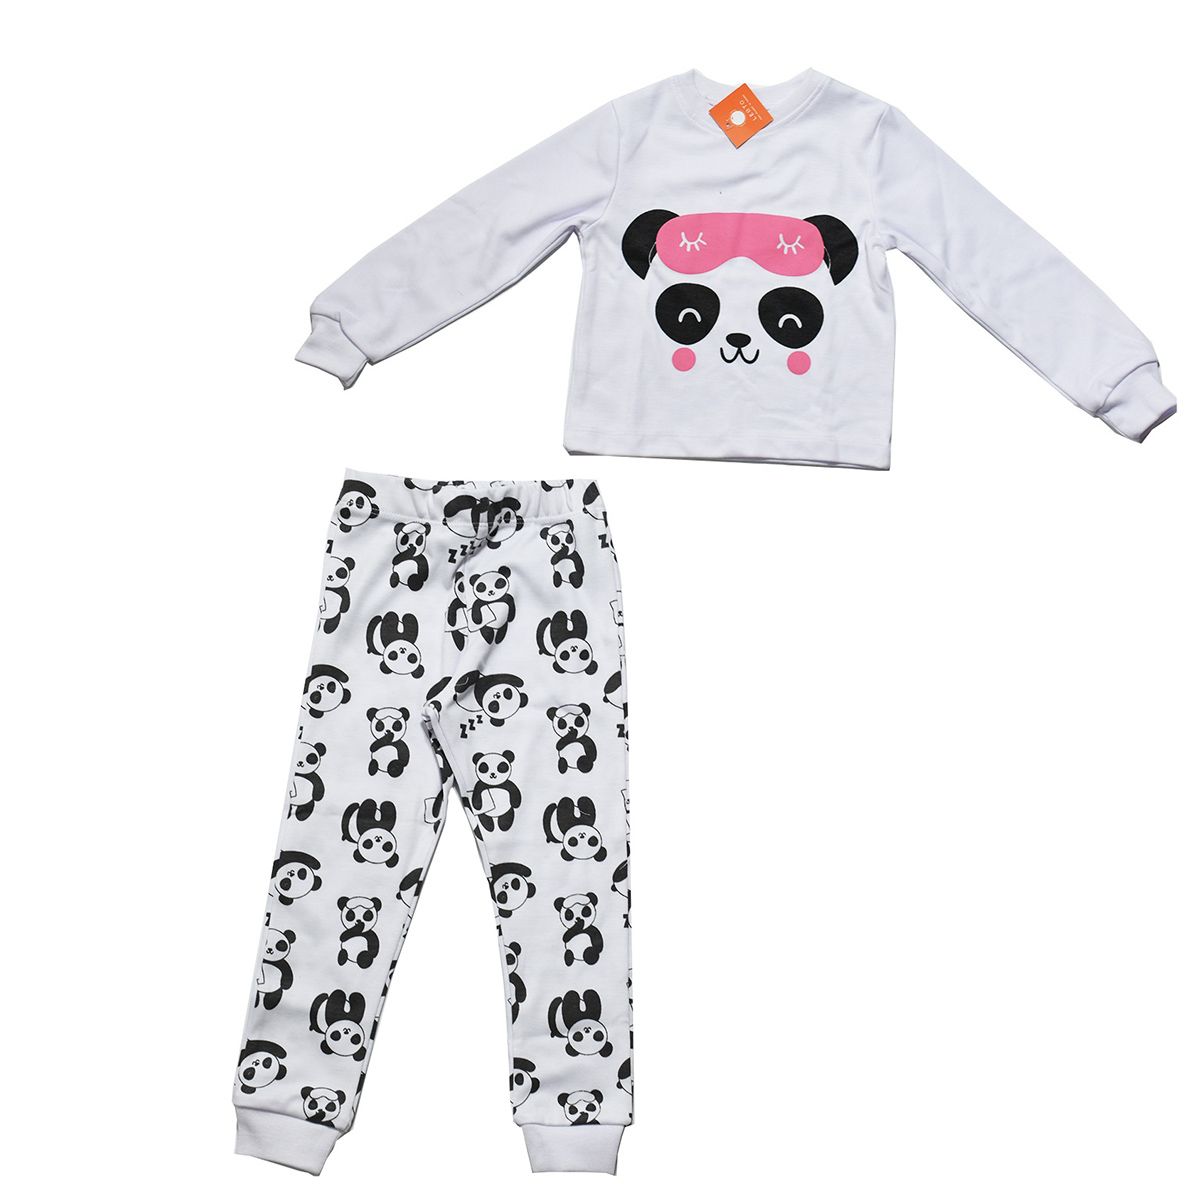 ست تی شرت و شلوار بچگانه لبتو مدل Panda کد 5227 -  - 1